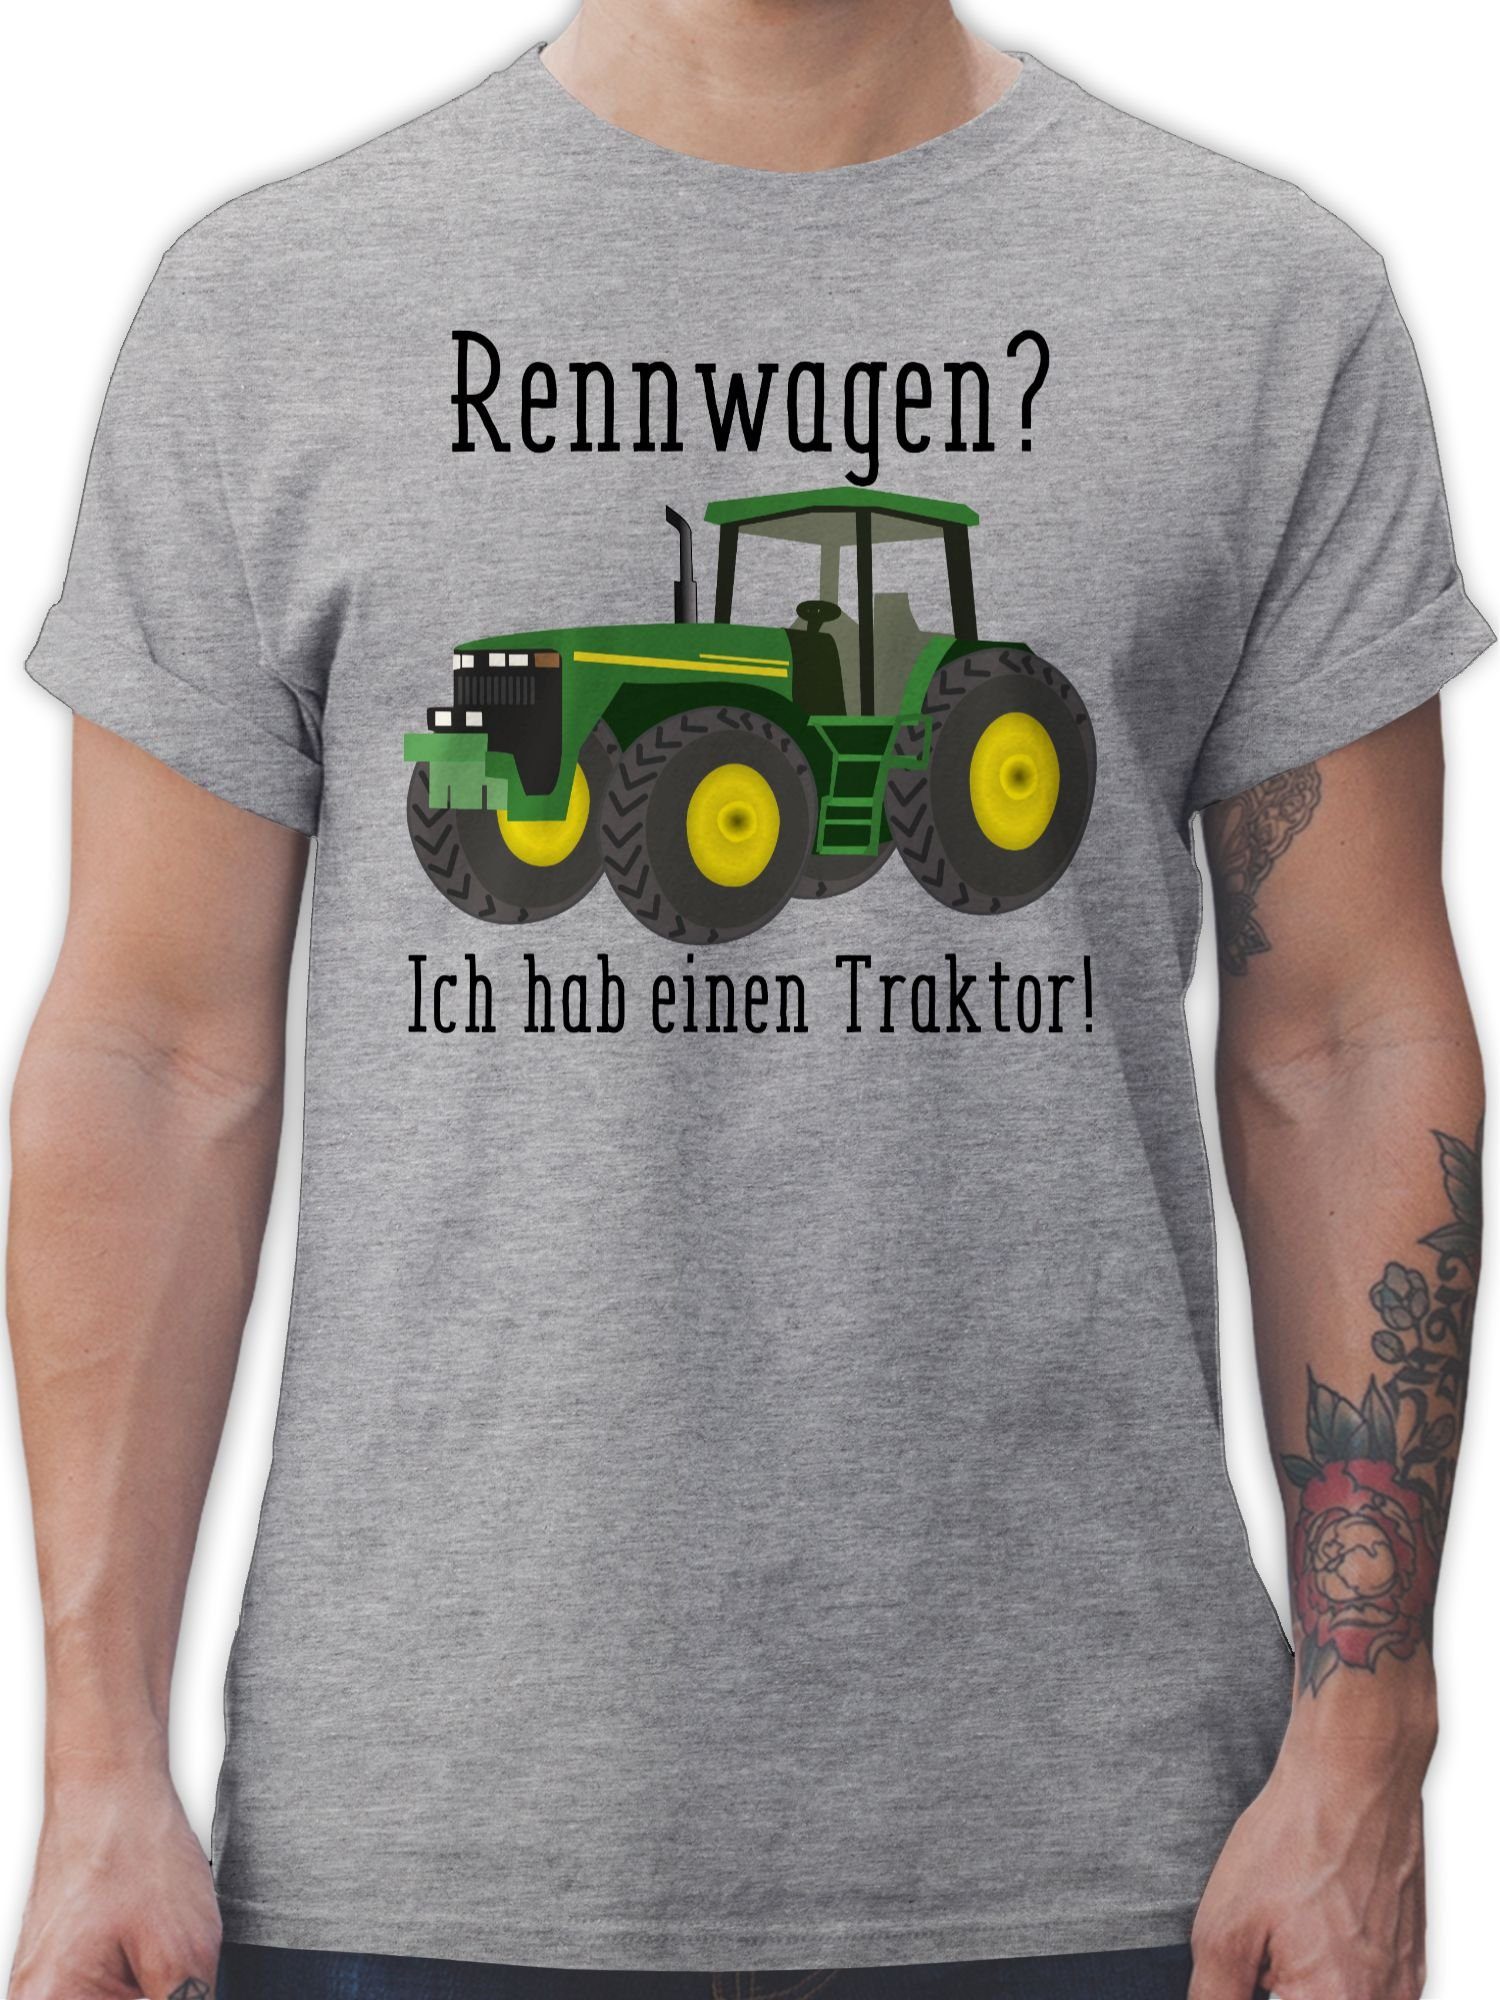 T-Shirt Ges einen Traktor Trecker Bauer Landwirt Rennwagen Shirtracer Traktor - Grau 1 Ich meliert Geschenk habe